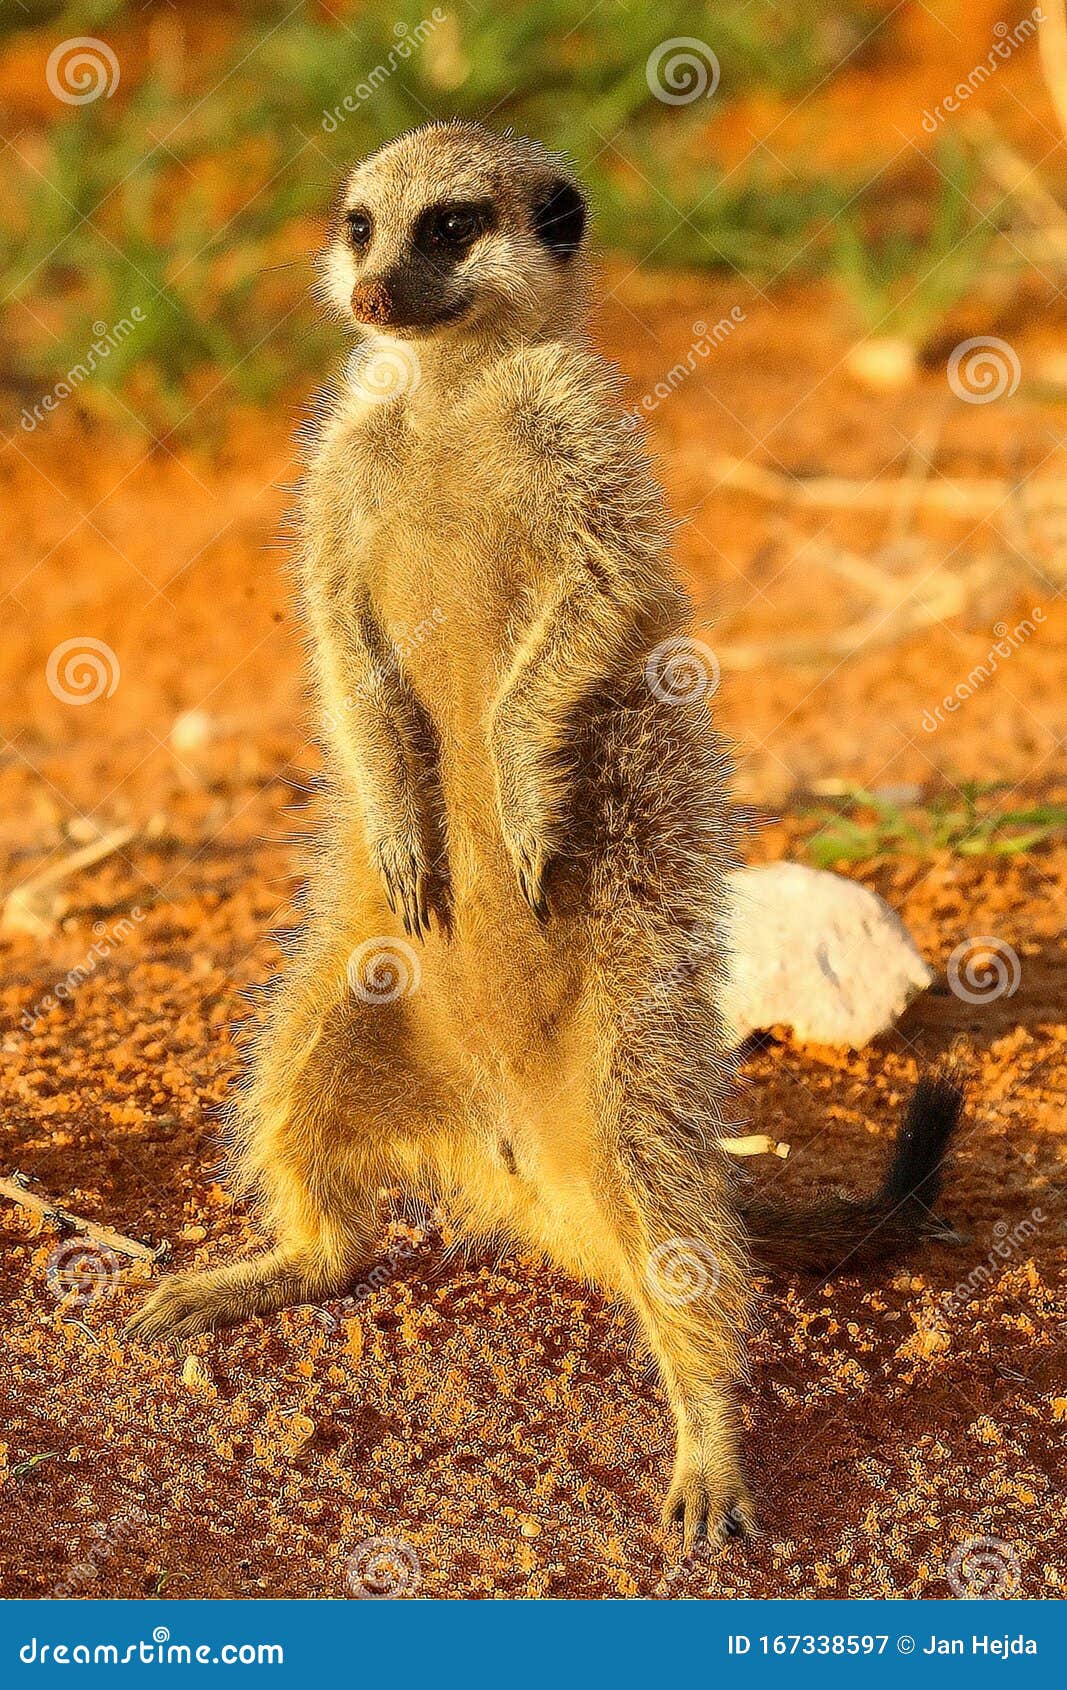 Meerkat Suricata Suricatta Timon in Kalahari Desert Staying on Red Sand  Close To Burrow Watching Around Stock Image - Image of face, kenya:  167338597